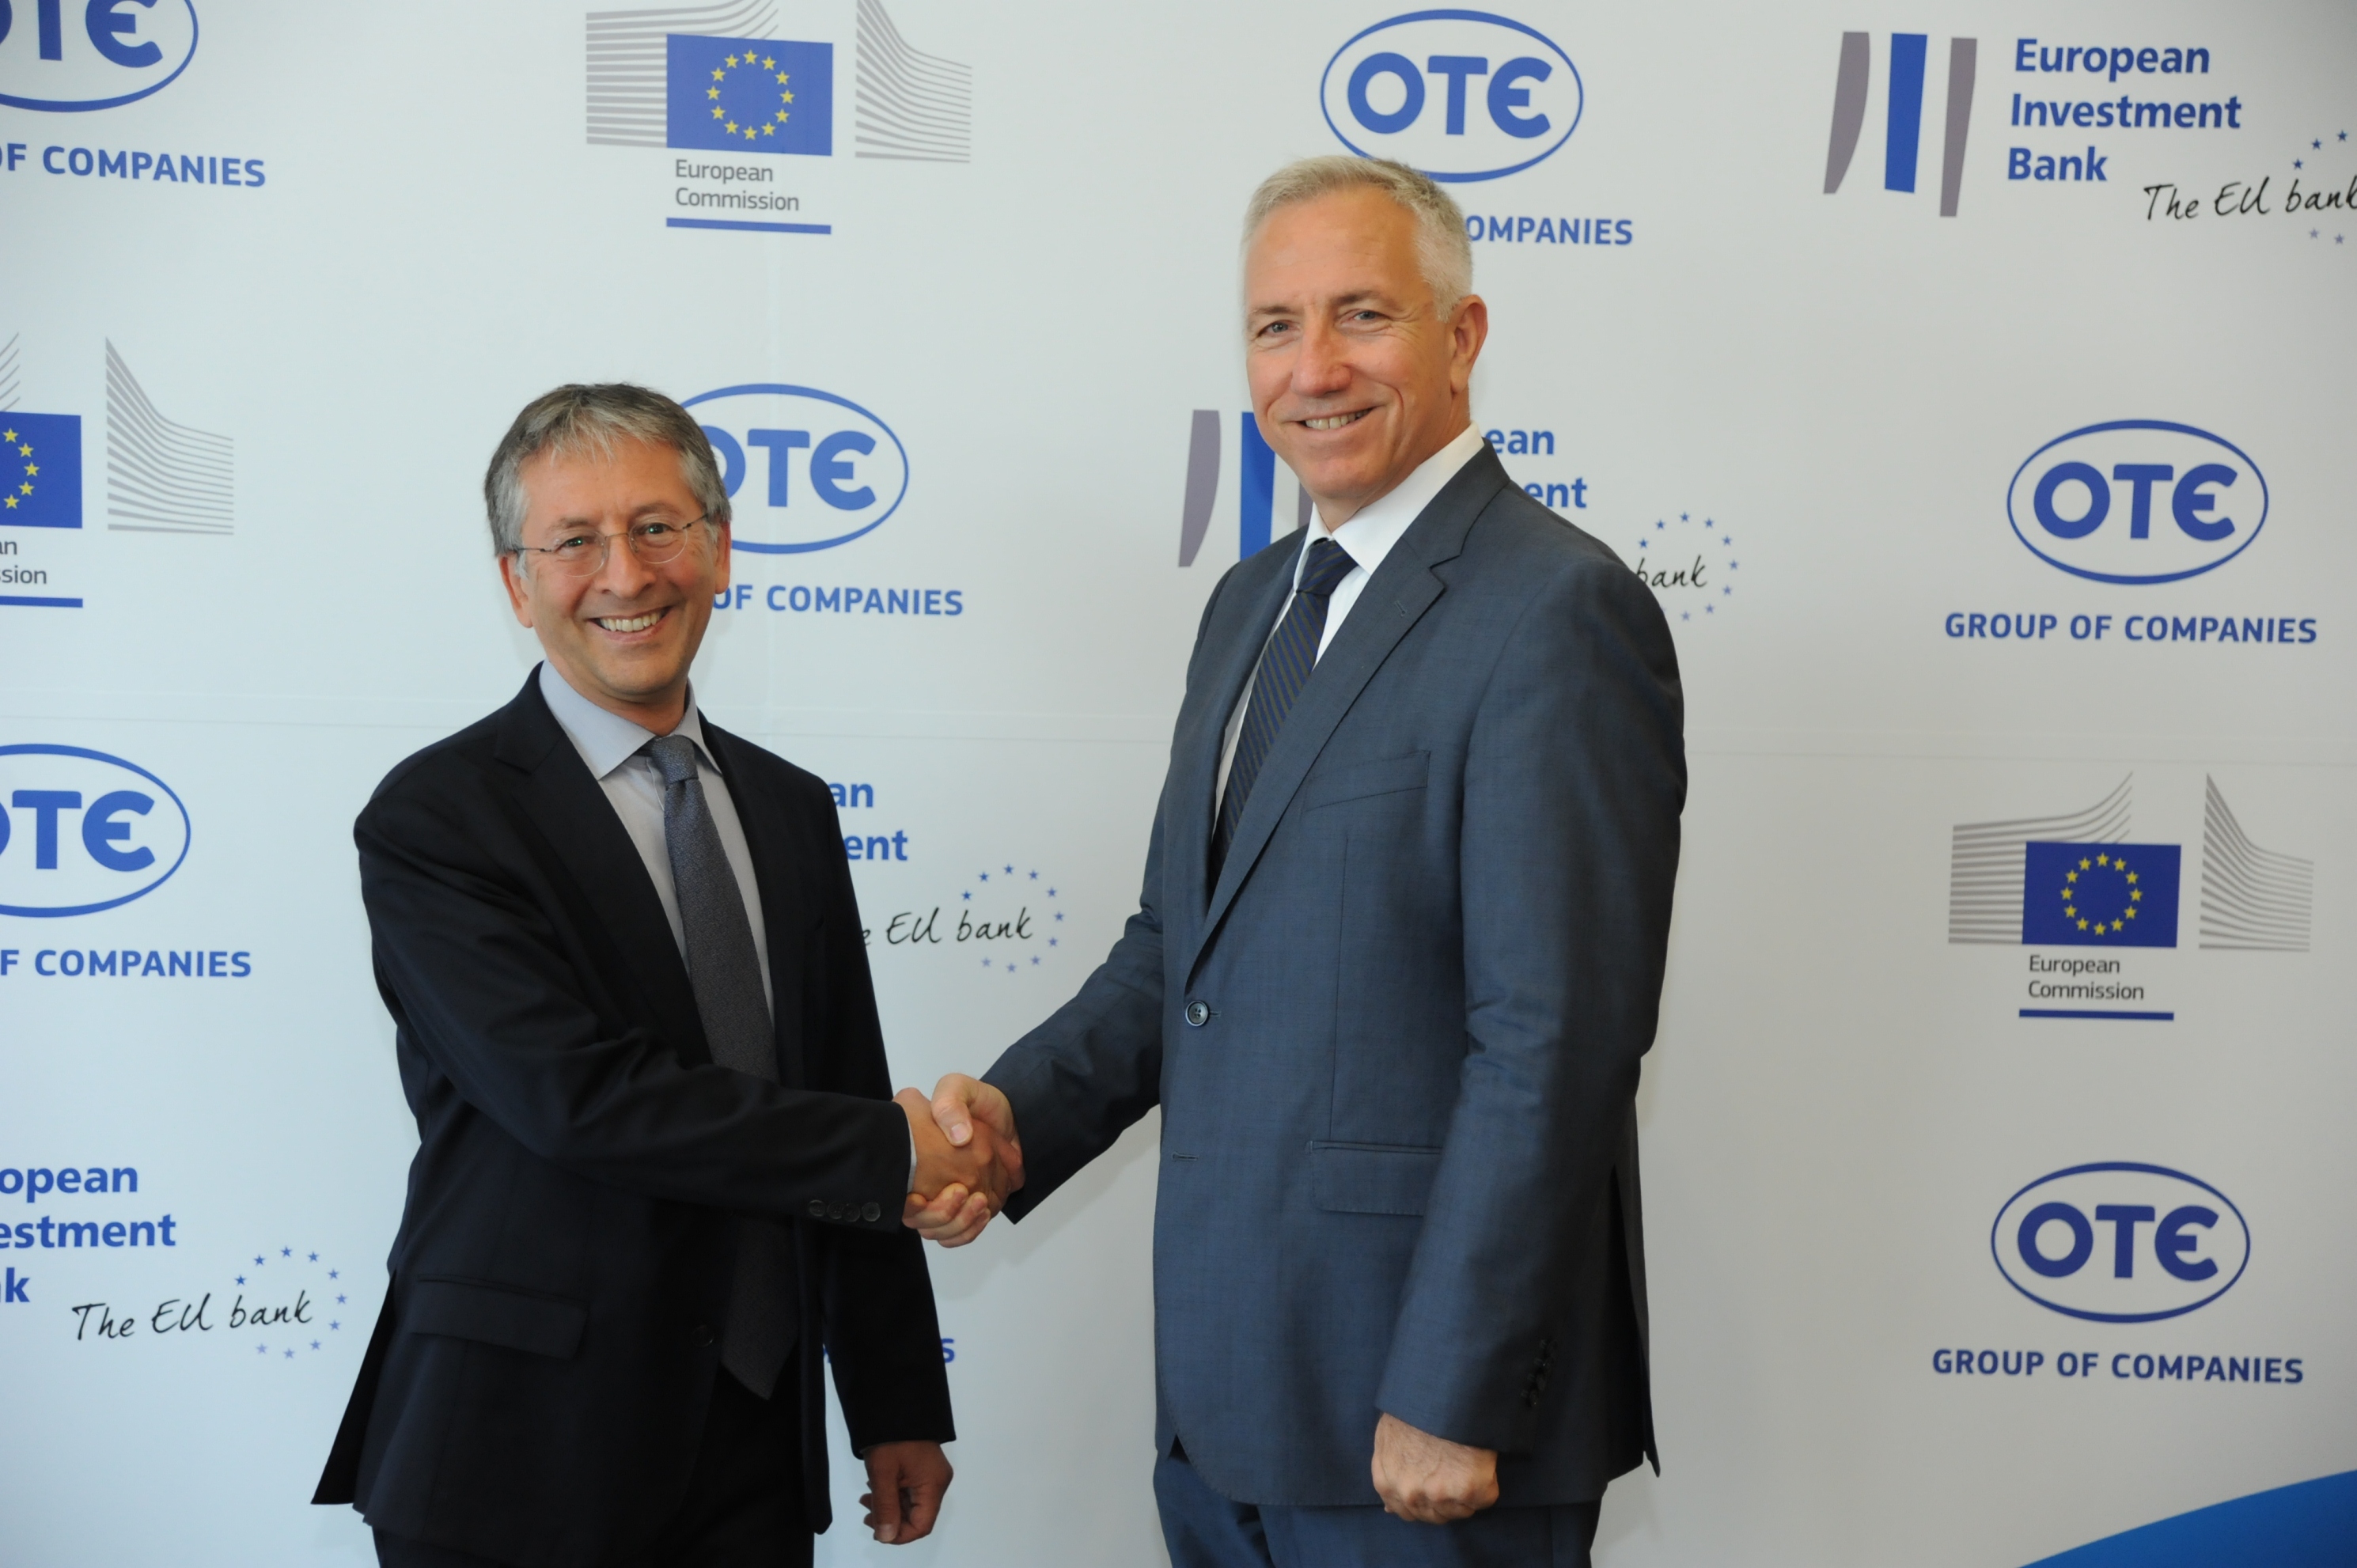 ΟΤΕ: Δανειακή συμφωνία 300 εκατ. ευρώ για δικτυακές υποδομές